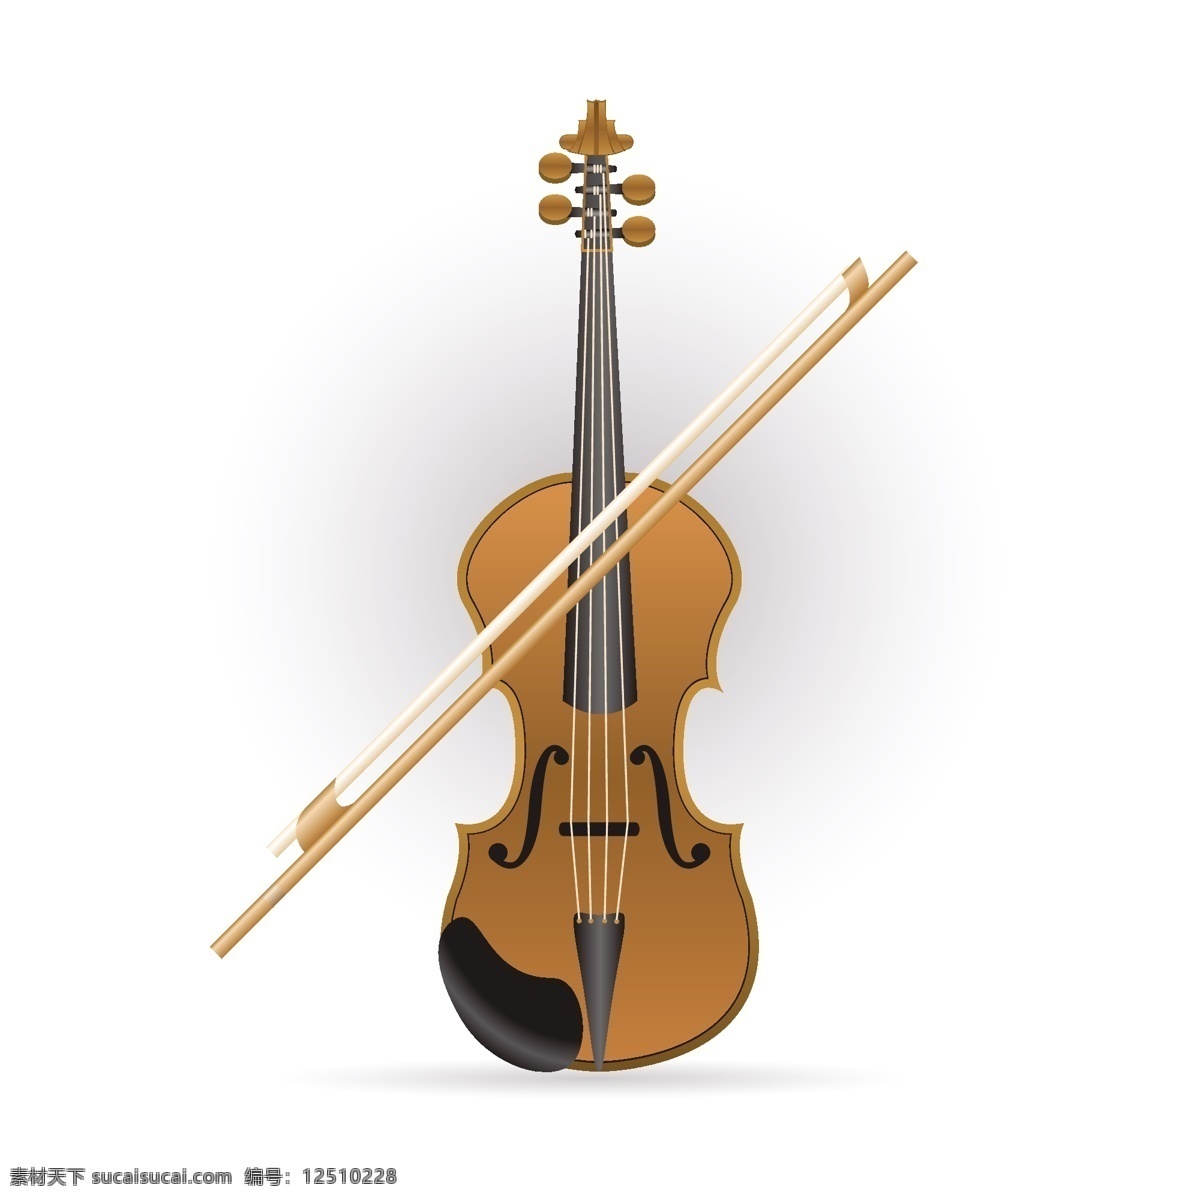 手绘小提琴 音乐 木材 图标 音乐会 小提琴 乐器 风格 字符串 乐团 仪器 大提琴 古典 交响乐 中提琴 弦乐 仪表